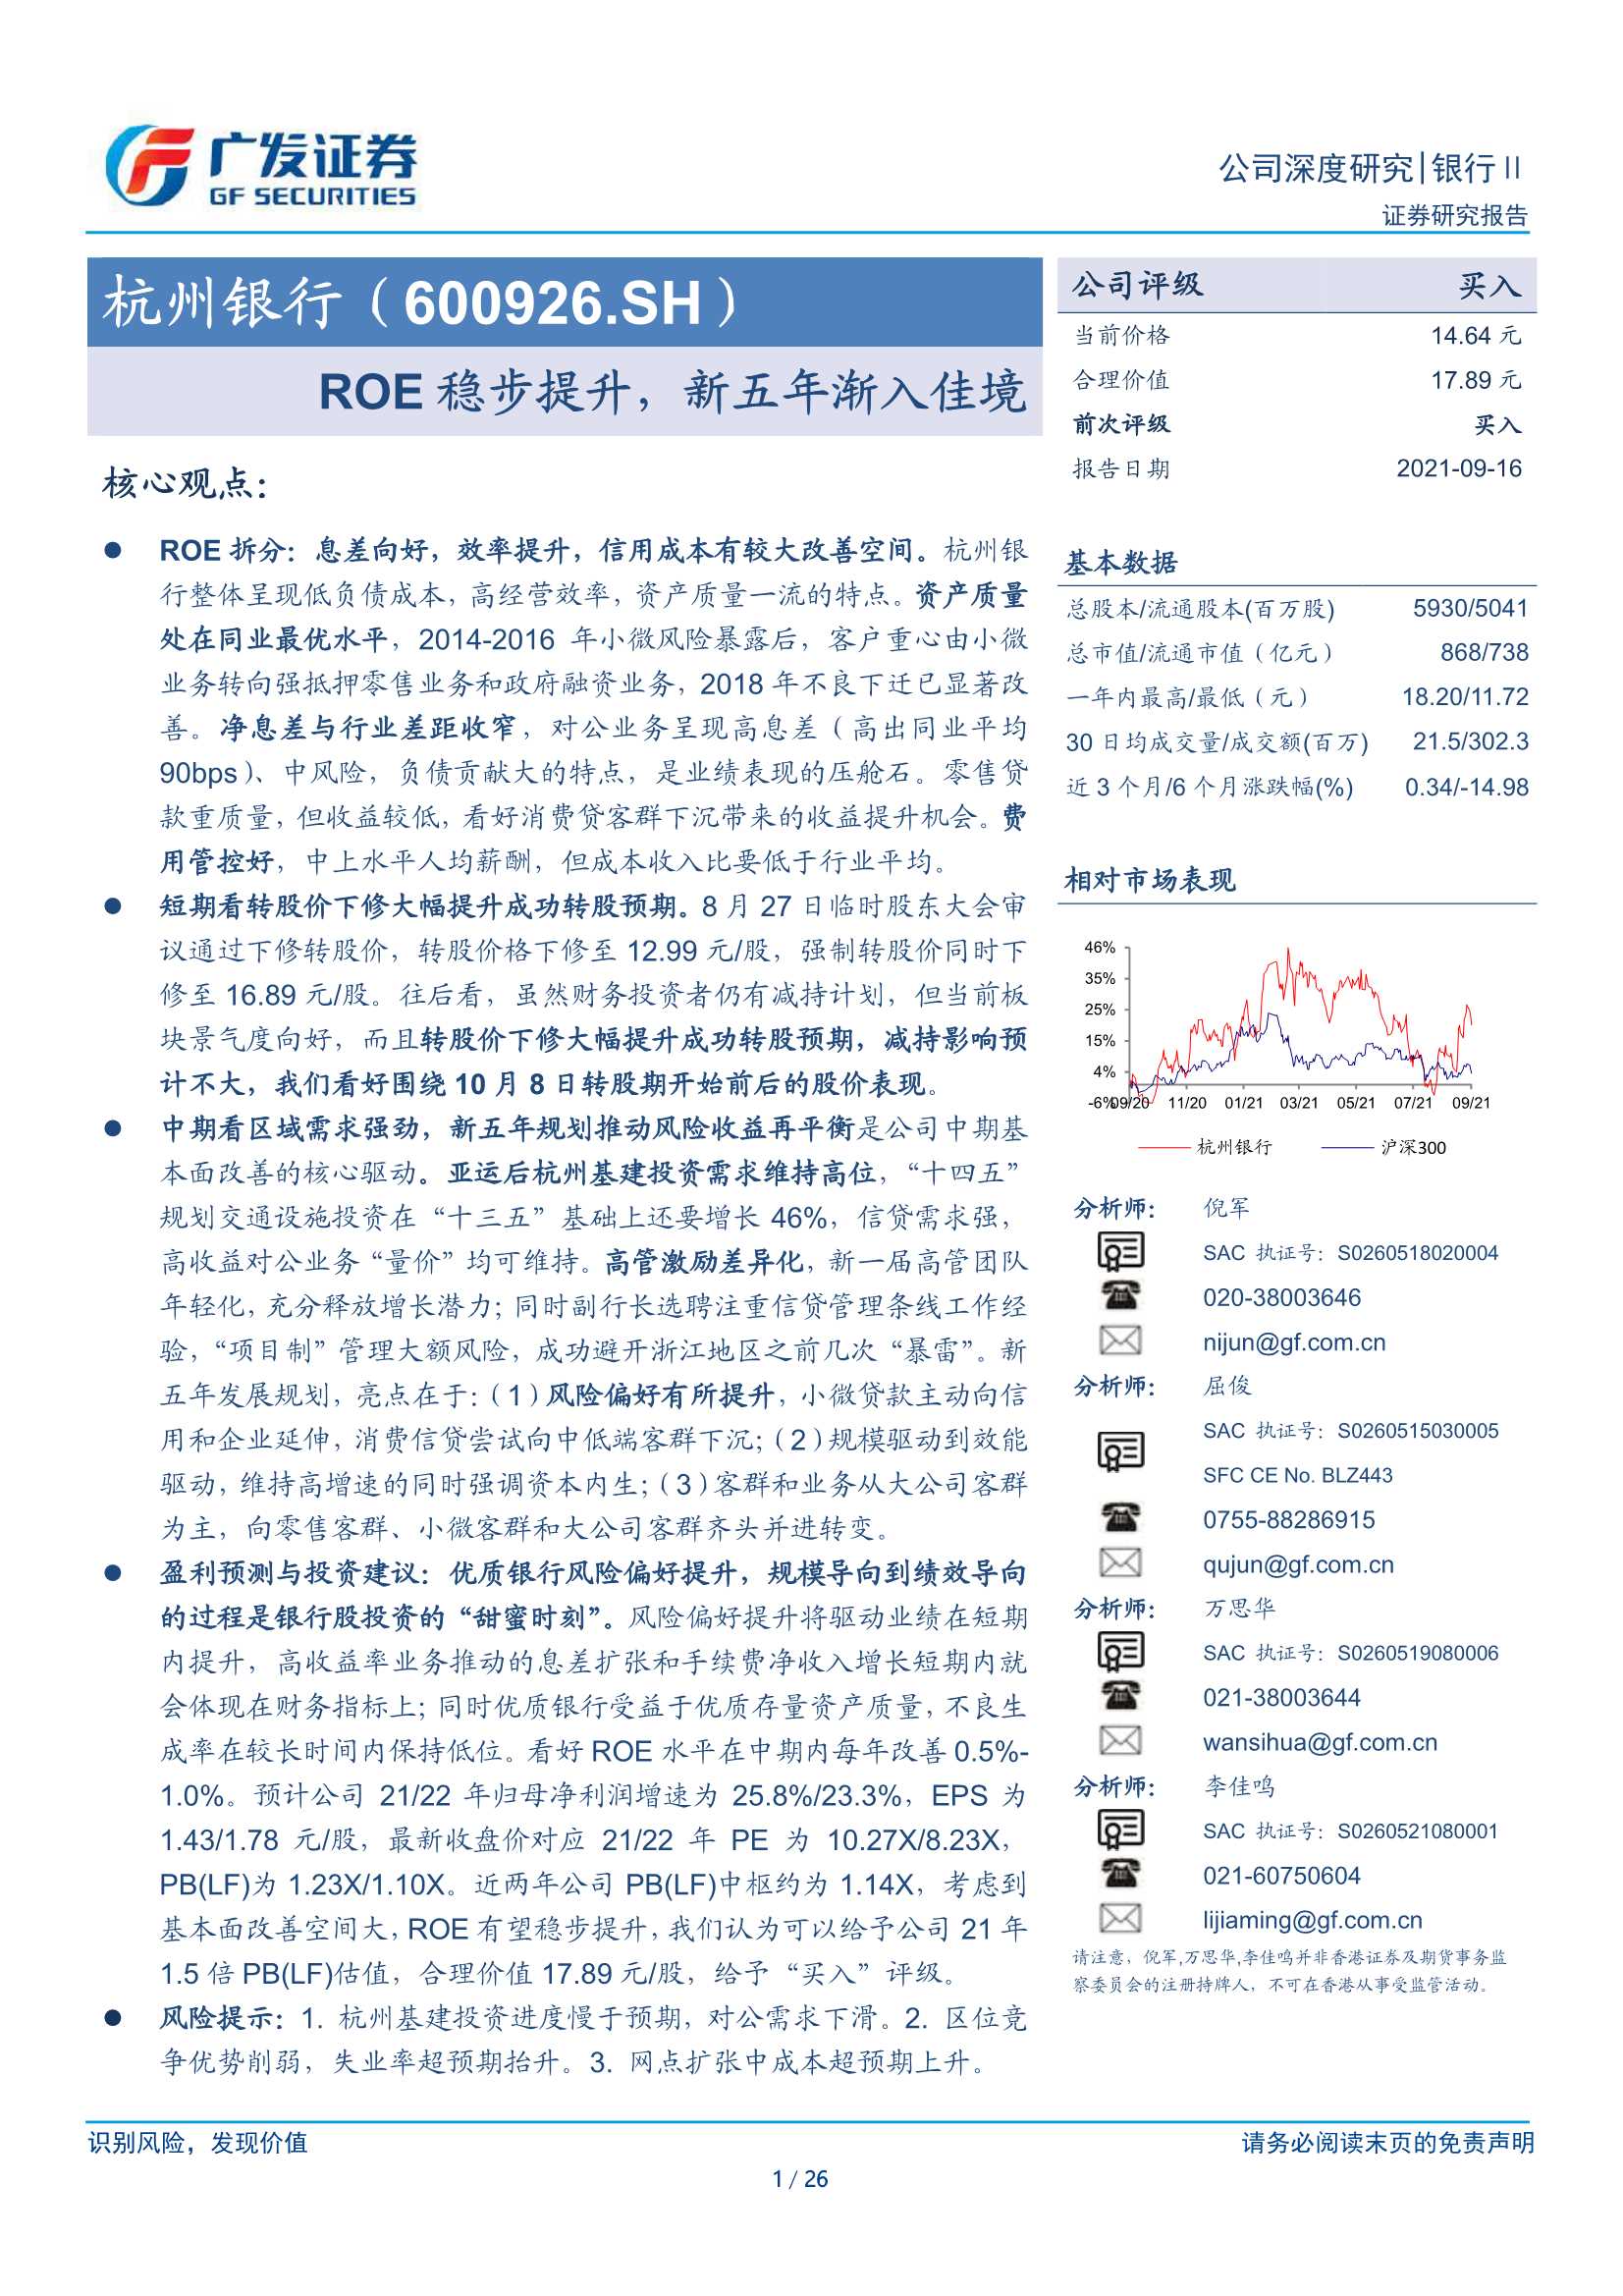 广发证券-杭州银行-600926-ROE稳步提升，新五年渐入佳境-20210916-26页